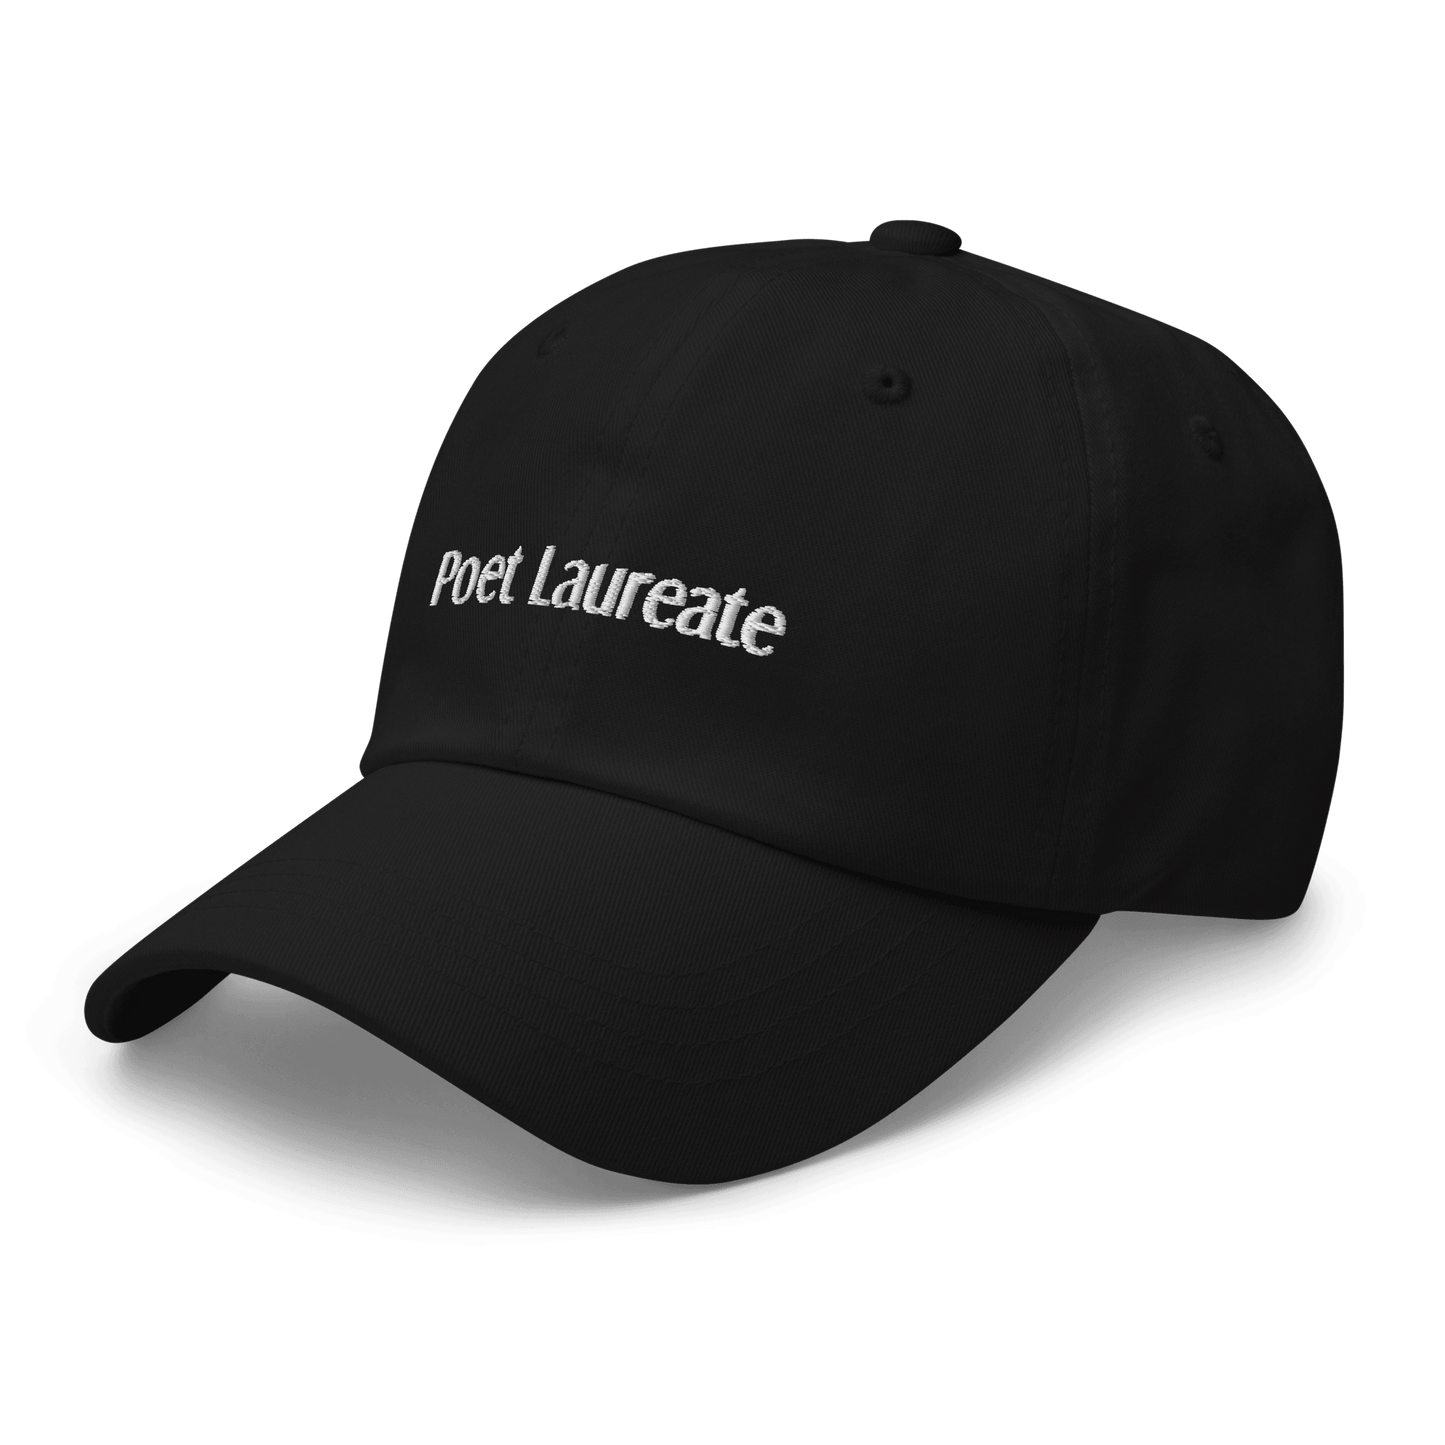 Poet Laureate cap